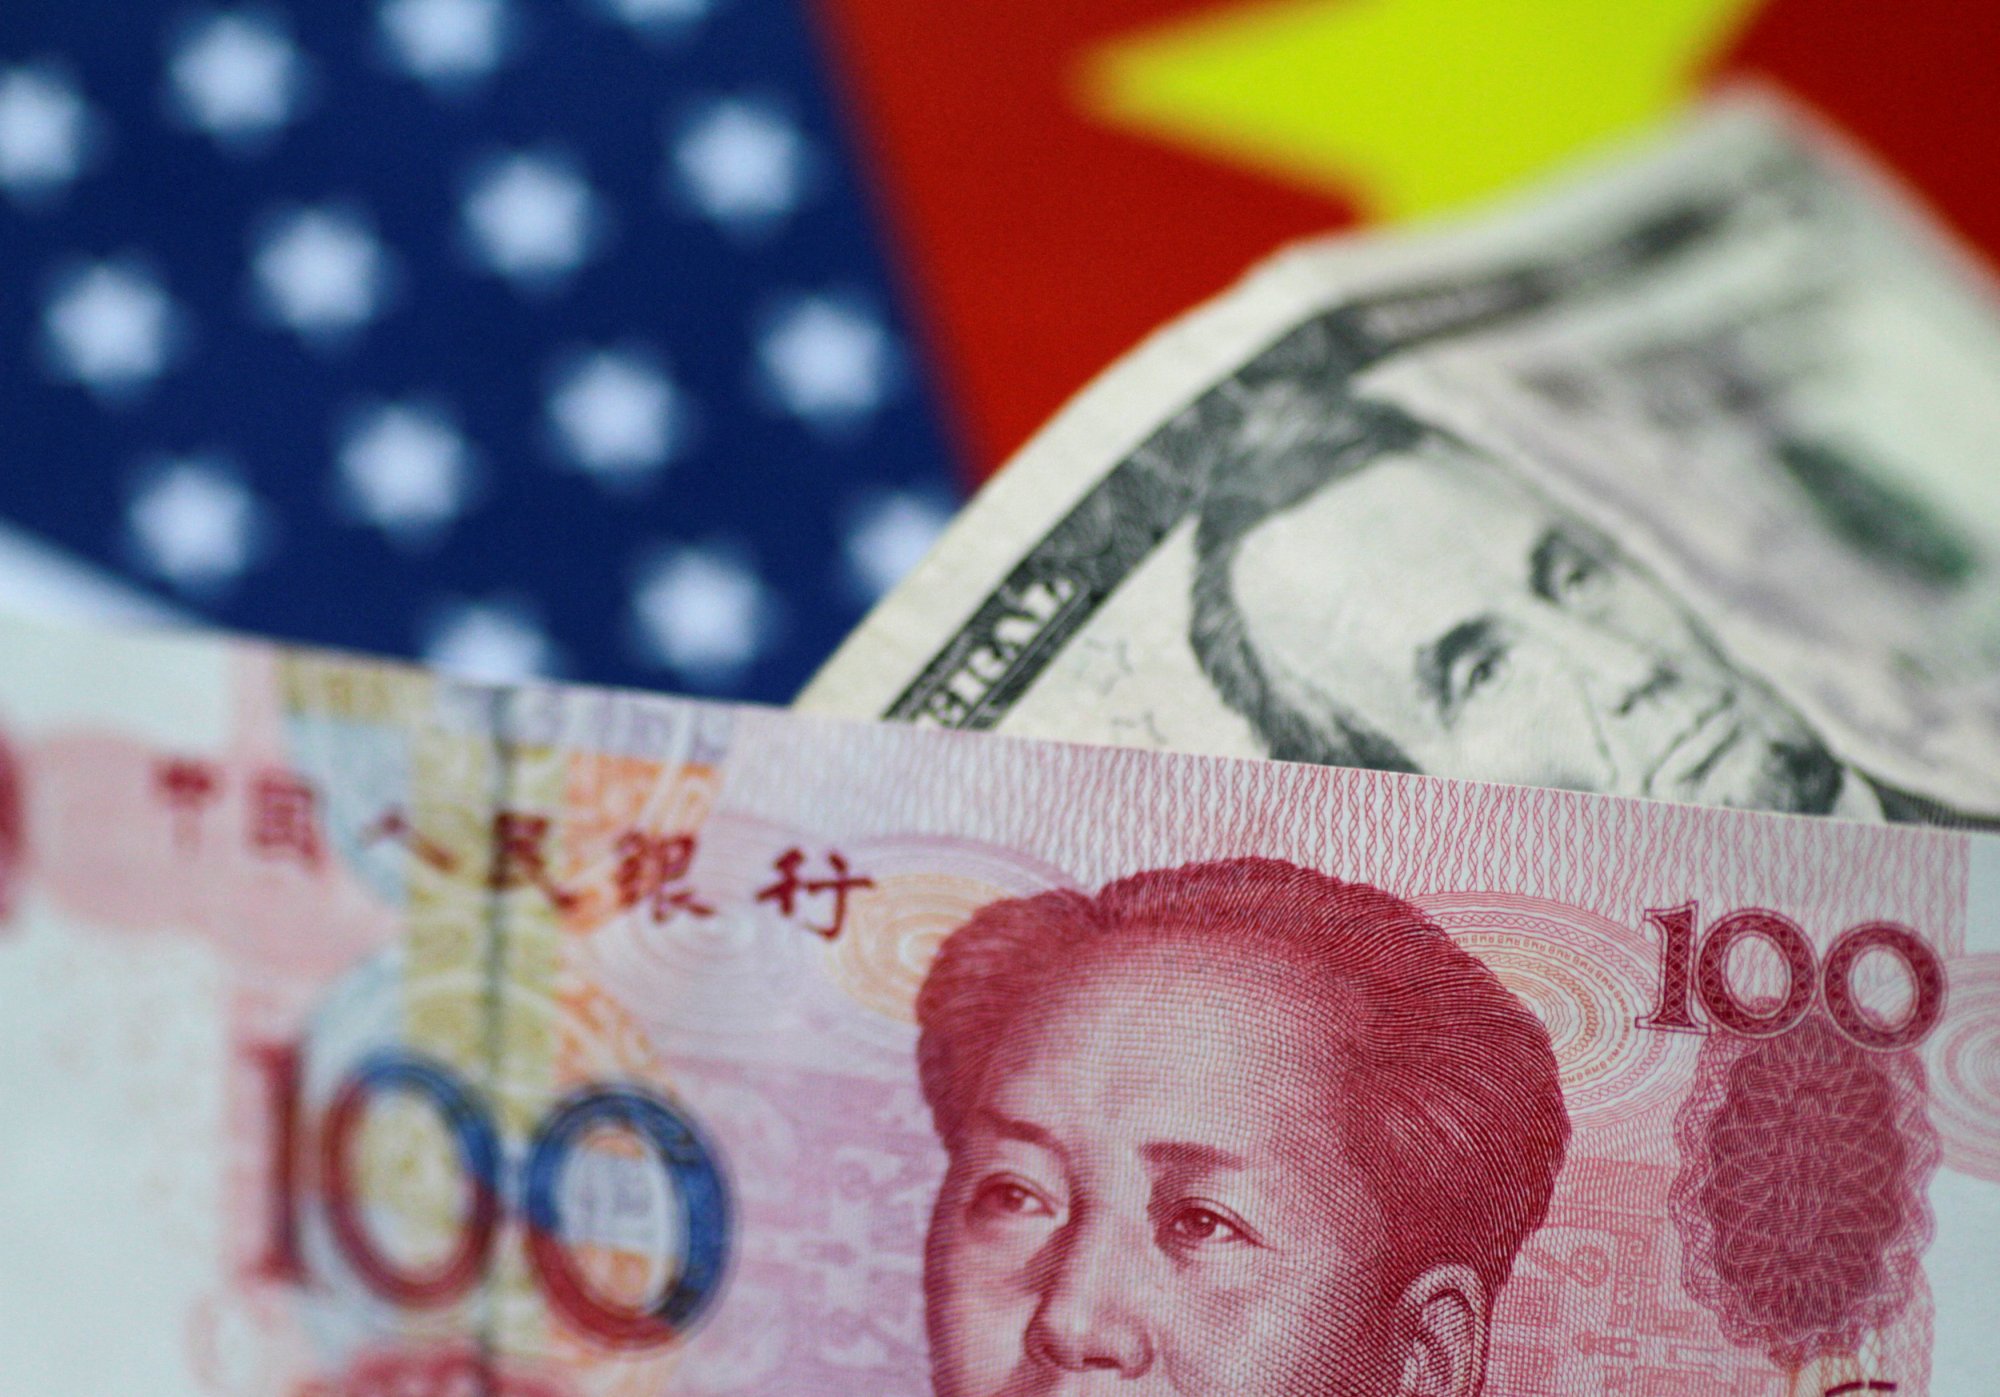 Κίνα: Το Πεκίνο θα αντιδράσει στις αμερικανικές κυρώσεις κατά έξι κινεζικών εταιρειών